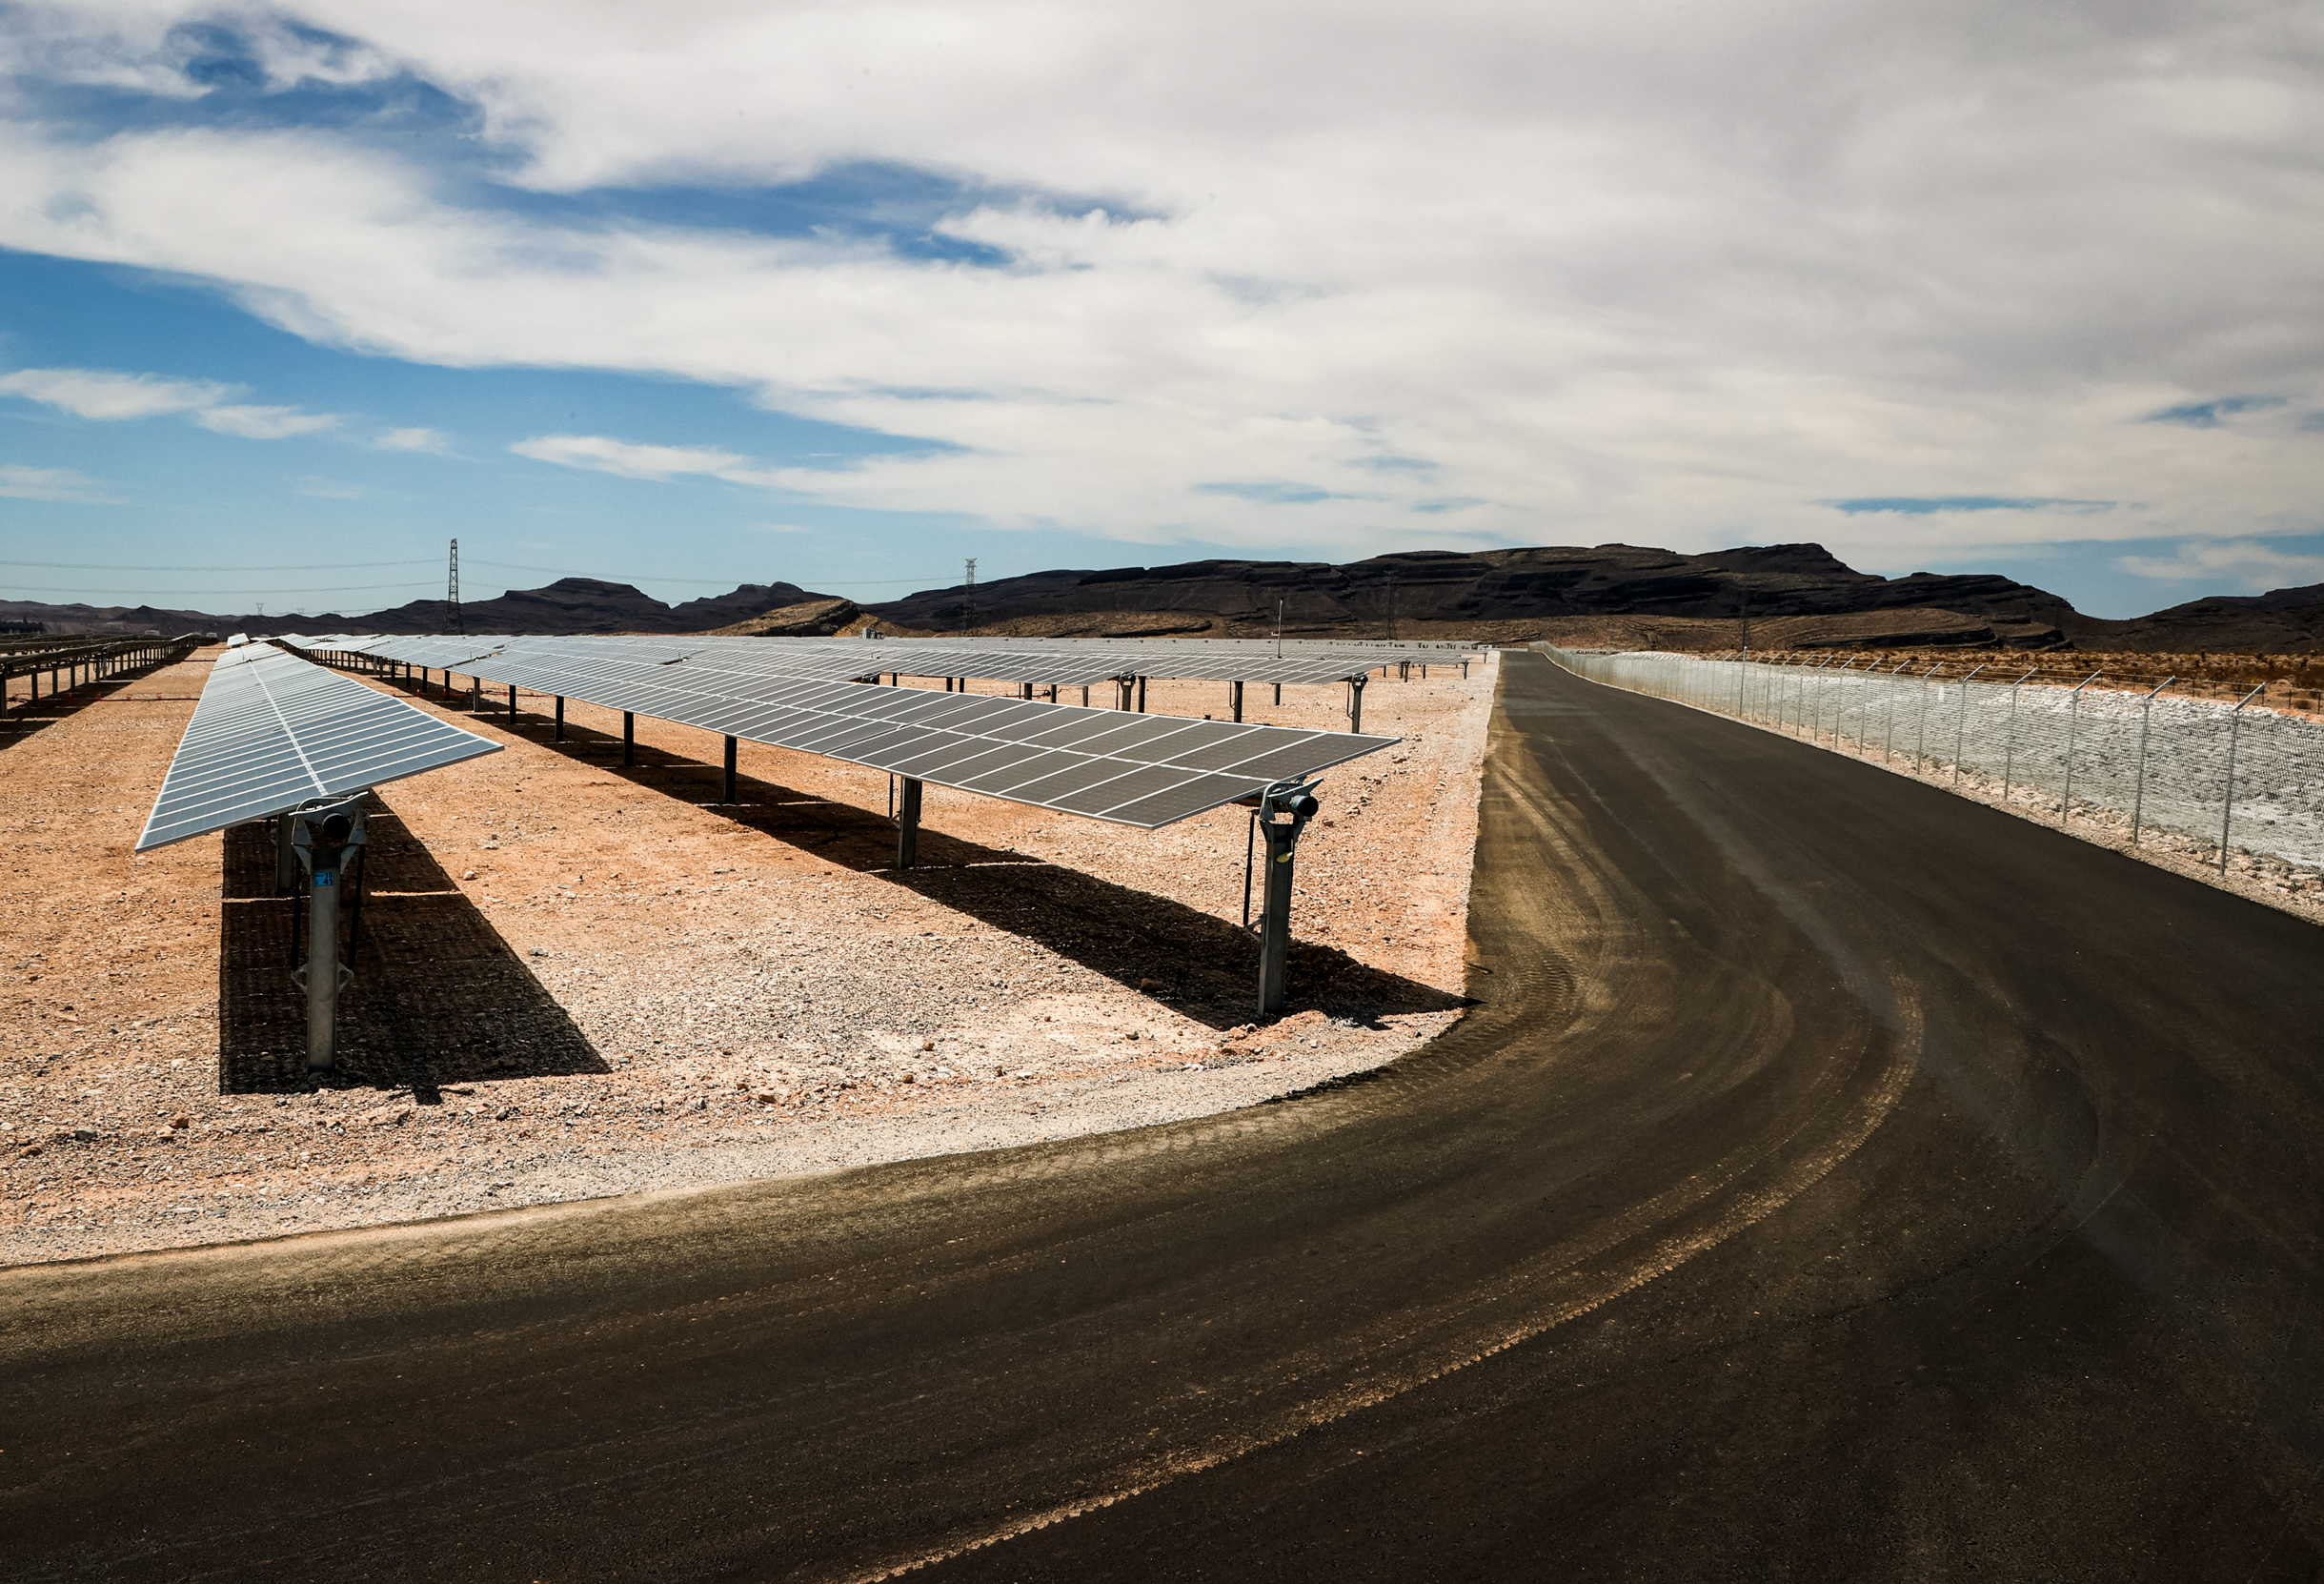 Mảng Quang năng MGM Resorts Mega 100 megawatt được ra mắt tại Dry Lake Valley, Nevada, vào ngày 28/06/2021. Dự án nằm trên 640 mẫu Anh sa mạc cách dải Las Vegas khoảng 30 dặm về phía bắc. 323,000 tấm pin mặt trời của mảng này được dự báo sẽ tạo ra khoảng 300,000 megawatt giờ, hoặc khoảng 35% lượng điện được sử dụng hàng năm của MGM ở Las Vegas. (Ảnh: Ethan Miller/Getty Images)